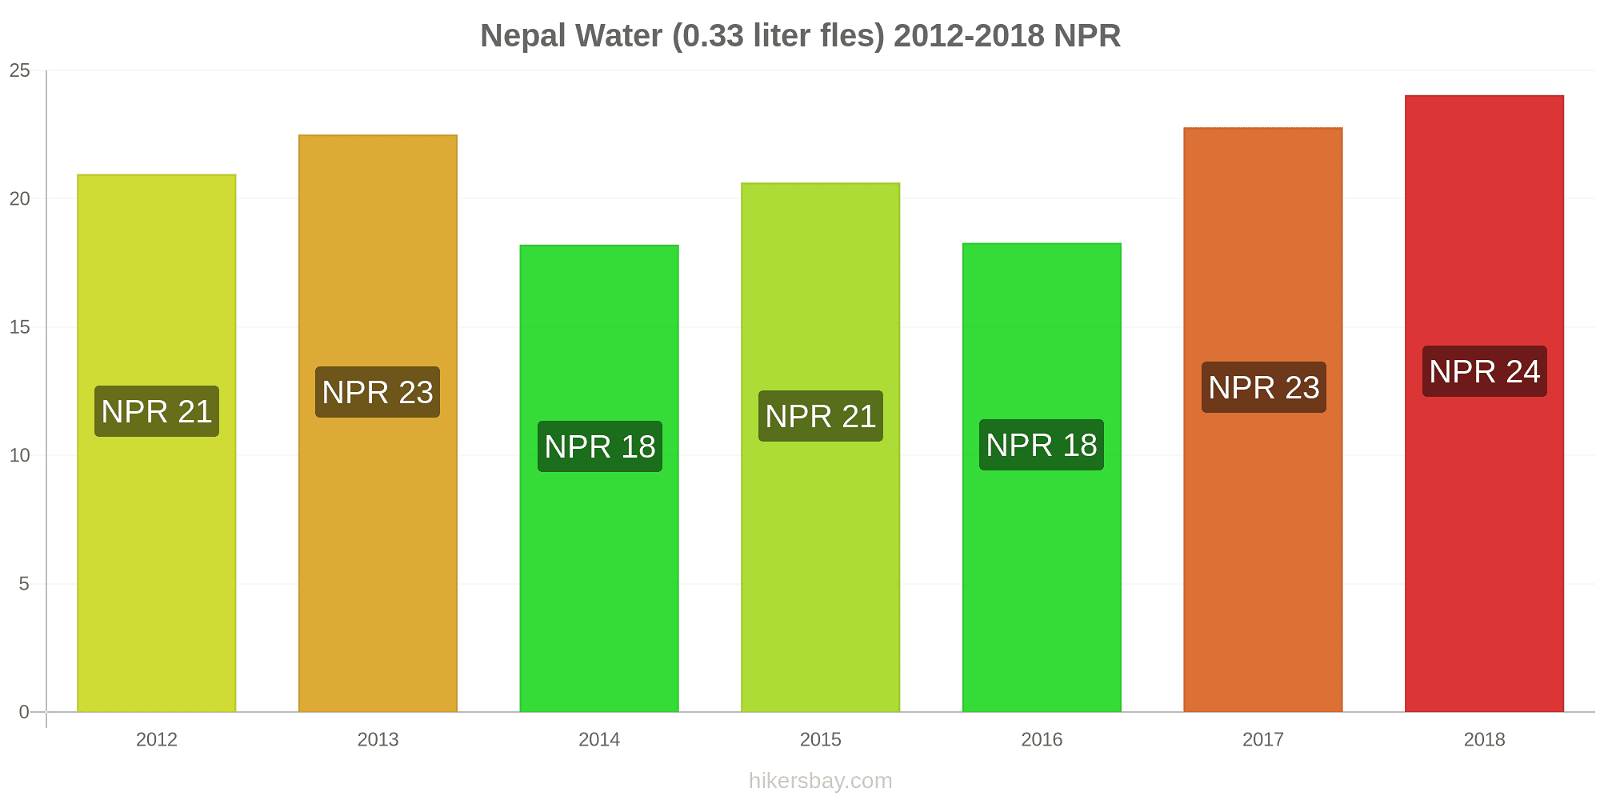 Nepal prijswijzigingen Water (0.33 liter fles) hikersbay.com